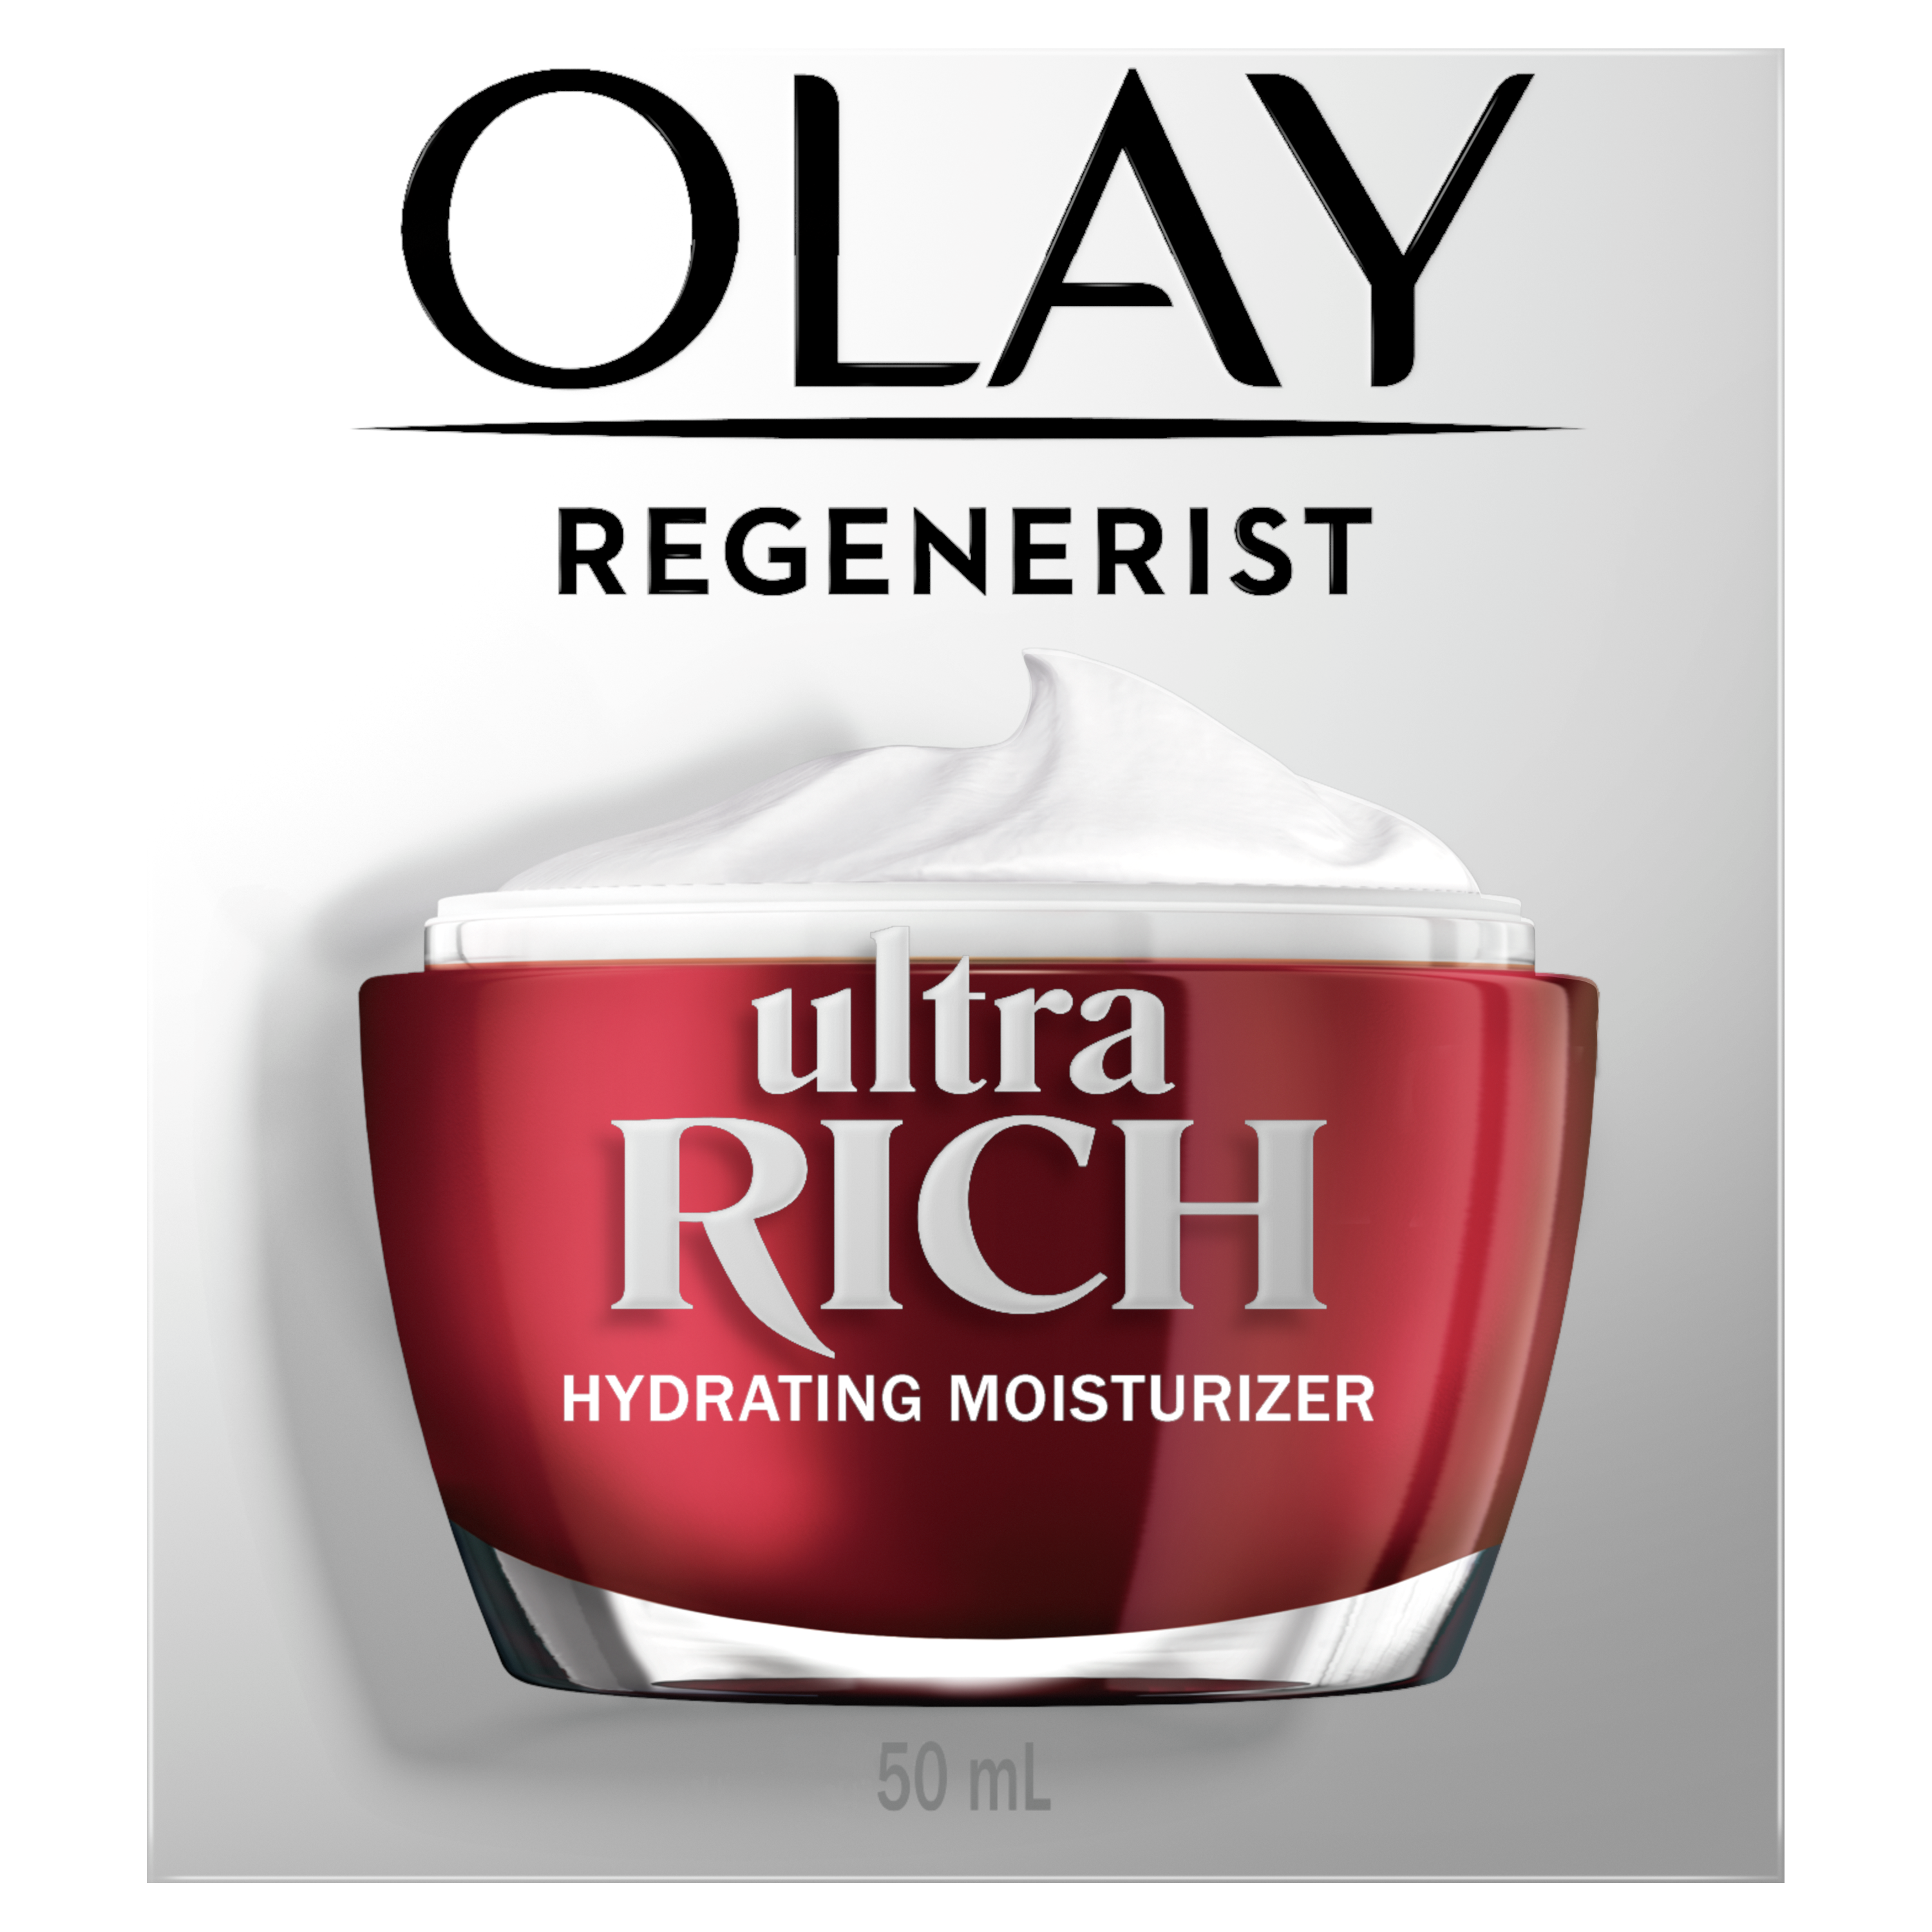 Hydratant pour le visage Olay Regenerist Ultra riche, 50 mL